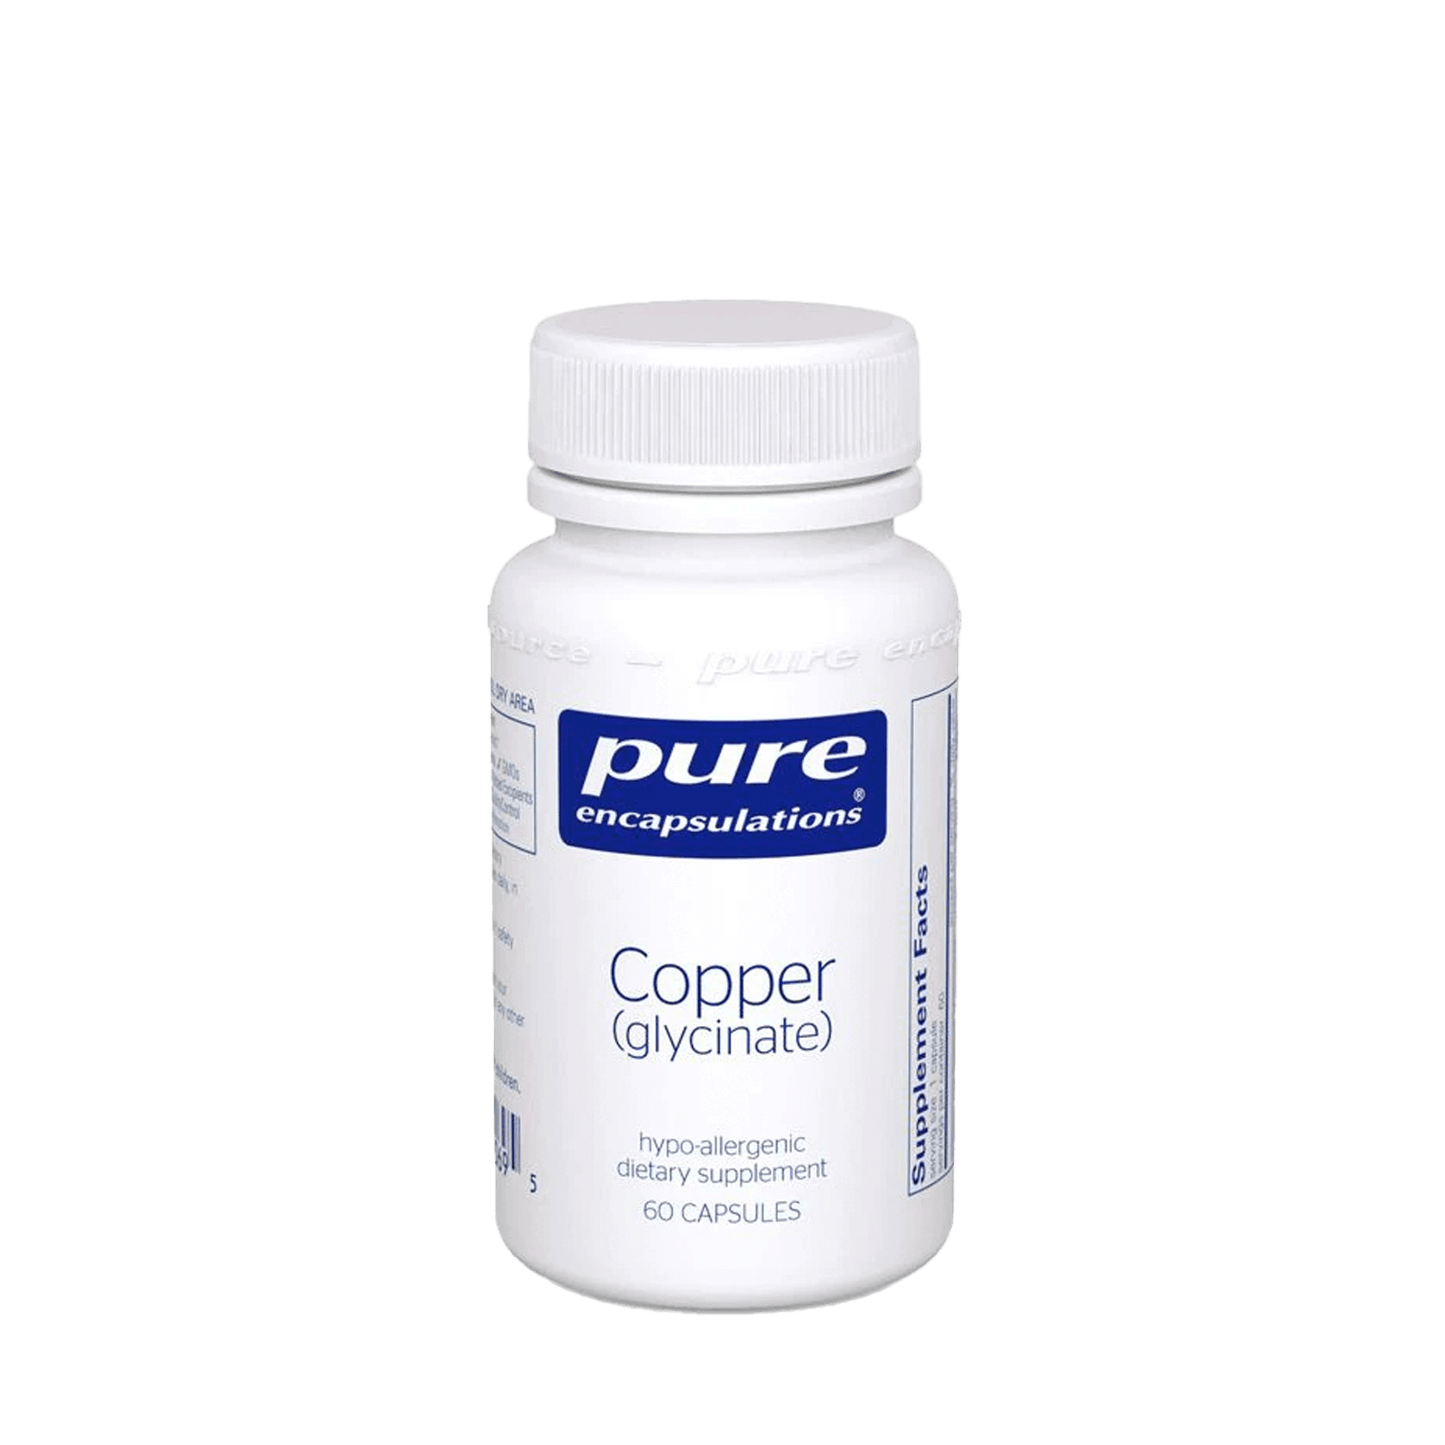 Pure Encapsulations Copper (glycinate) Capsules